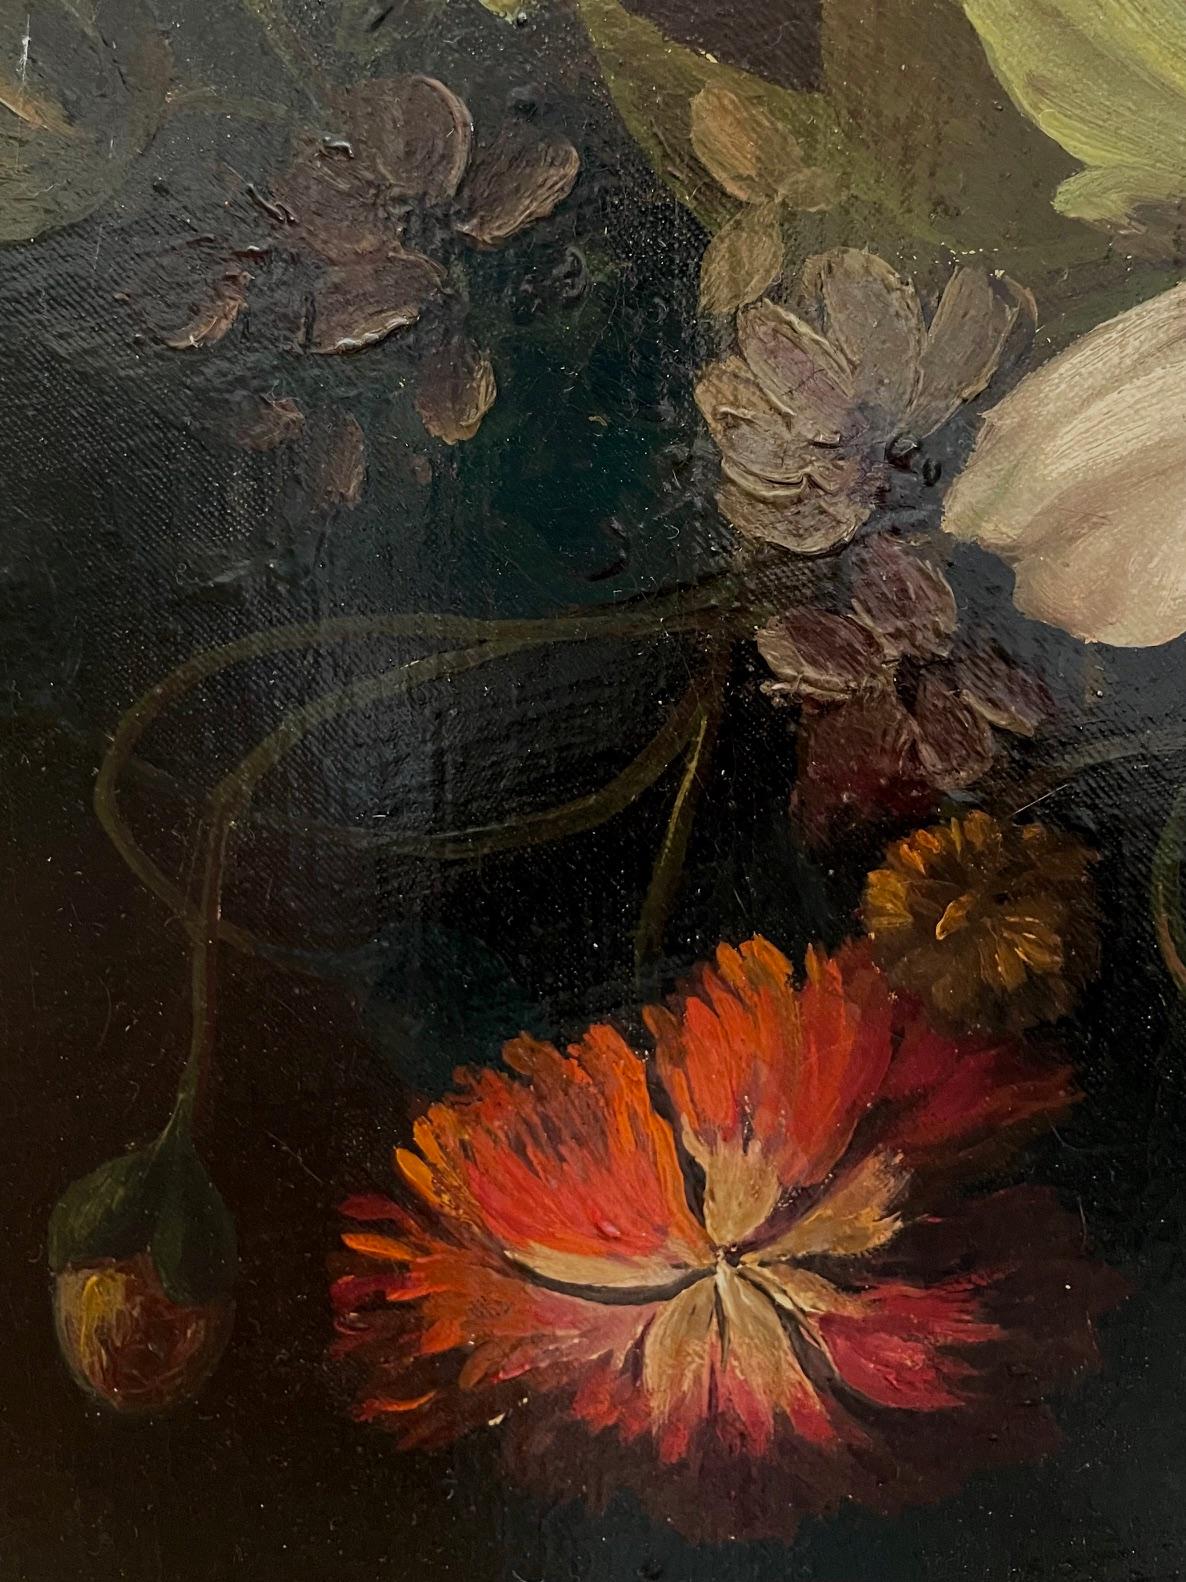  La fleur avec urne est de style hollandais classique datant du 17e siècle. Les fleurs éclatantes drapent l'urne de blanc, de cramoisi et de rose, se détachant sur le feuillage et les fleurs plus foncées sur un fond sombre. 

L'artiste et l'âge ne